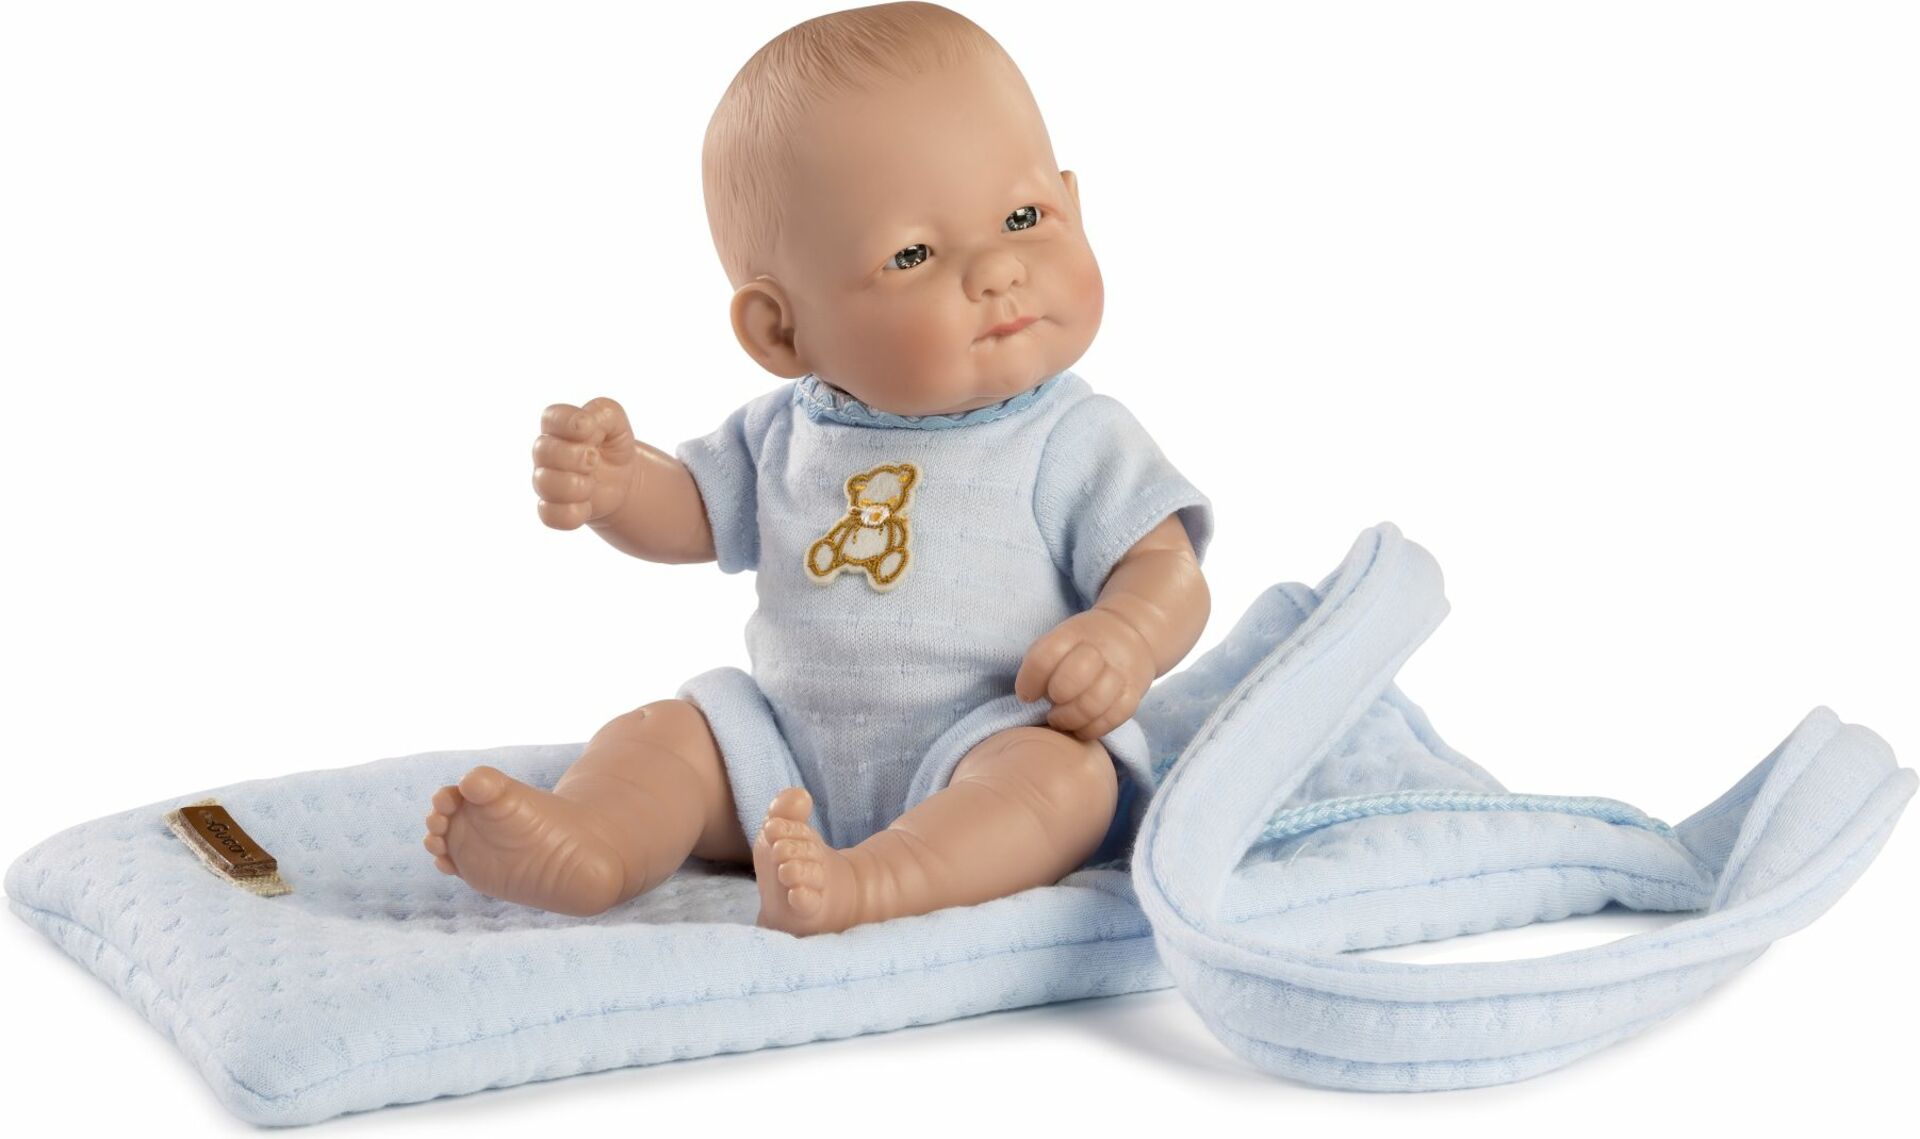 Guca 947 NEW BORN CHLAPČEK - realistická bábika bábätko s celovinylovým telom - 25 cm